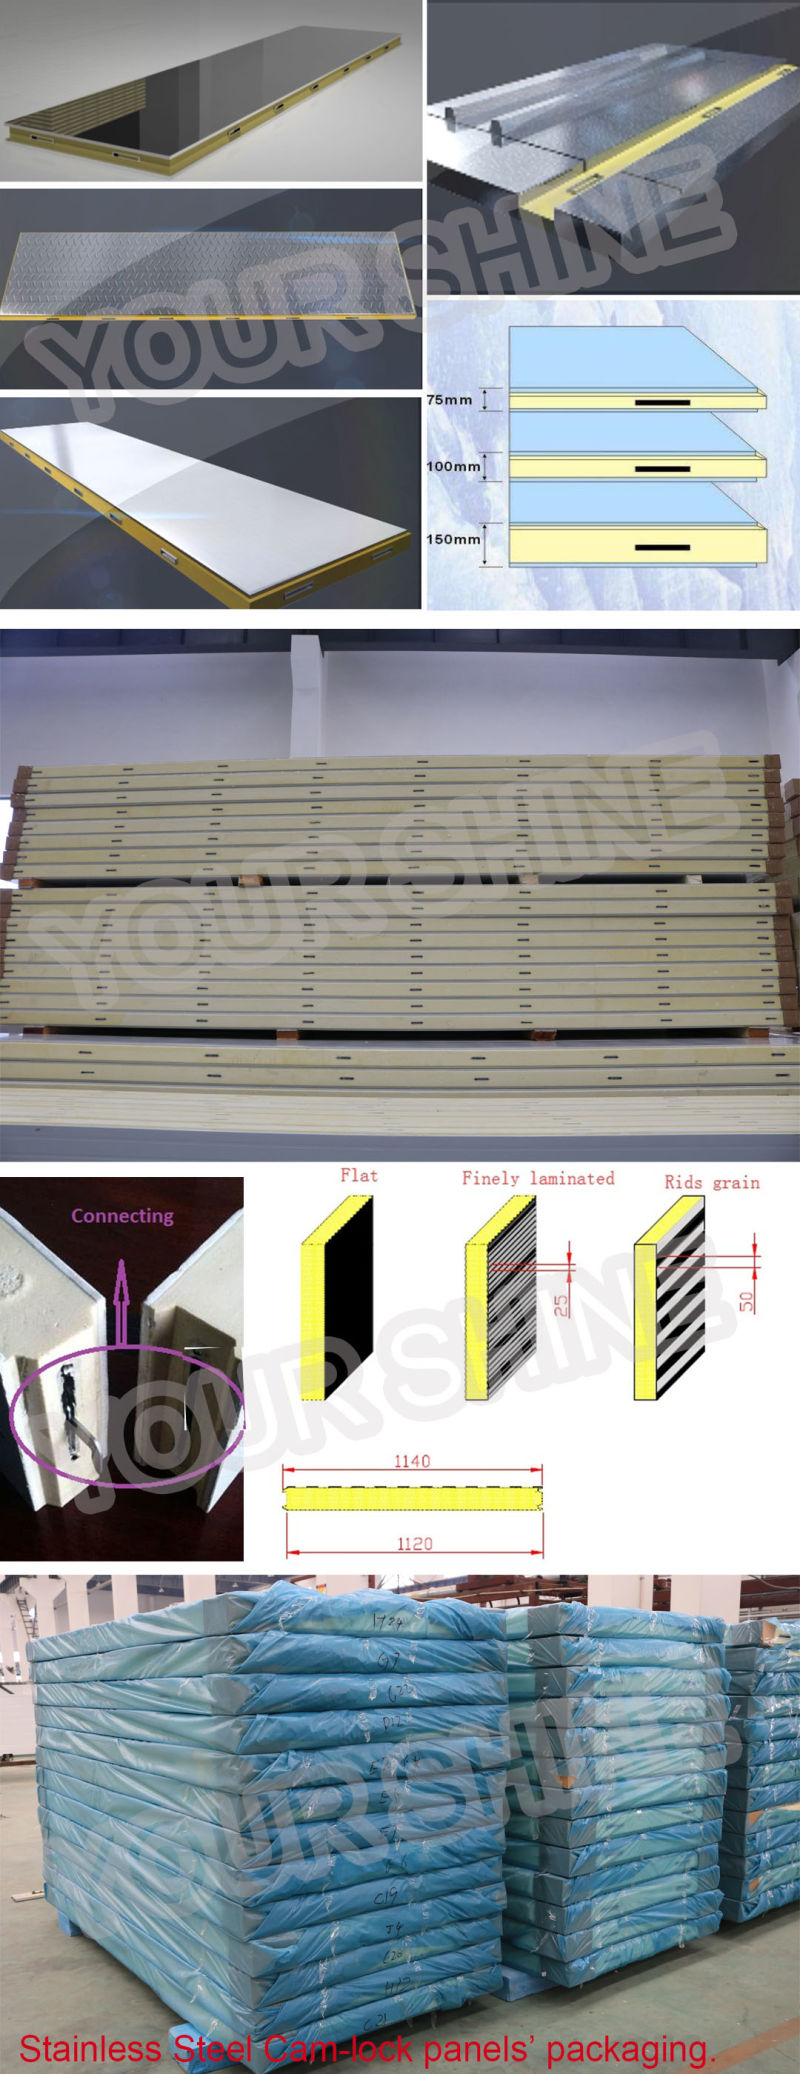 Cold Storage Panel / Polyurethane Panel / Basf PU Panel